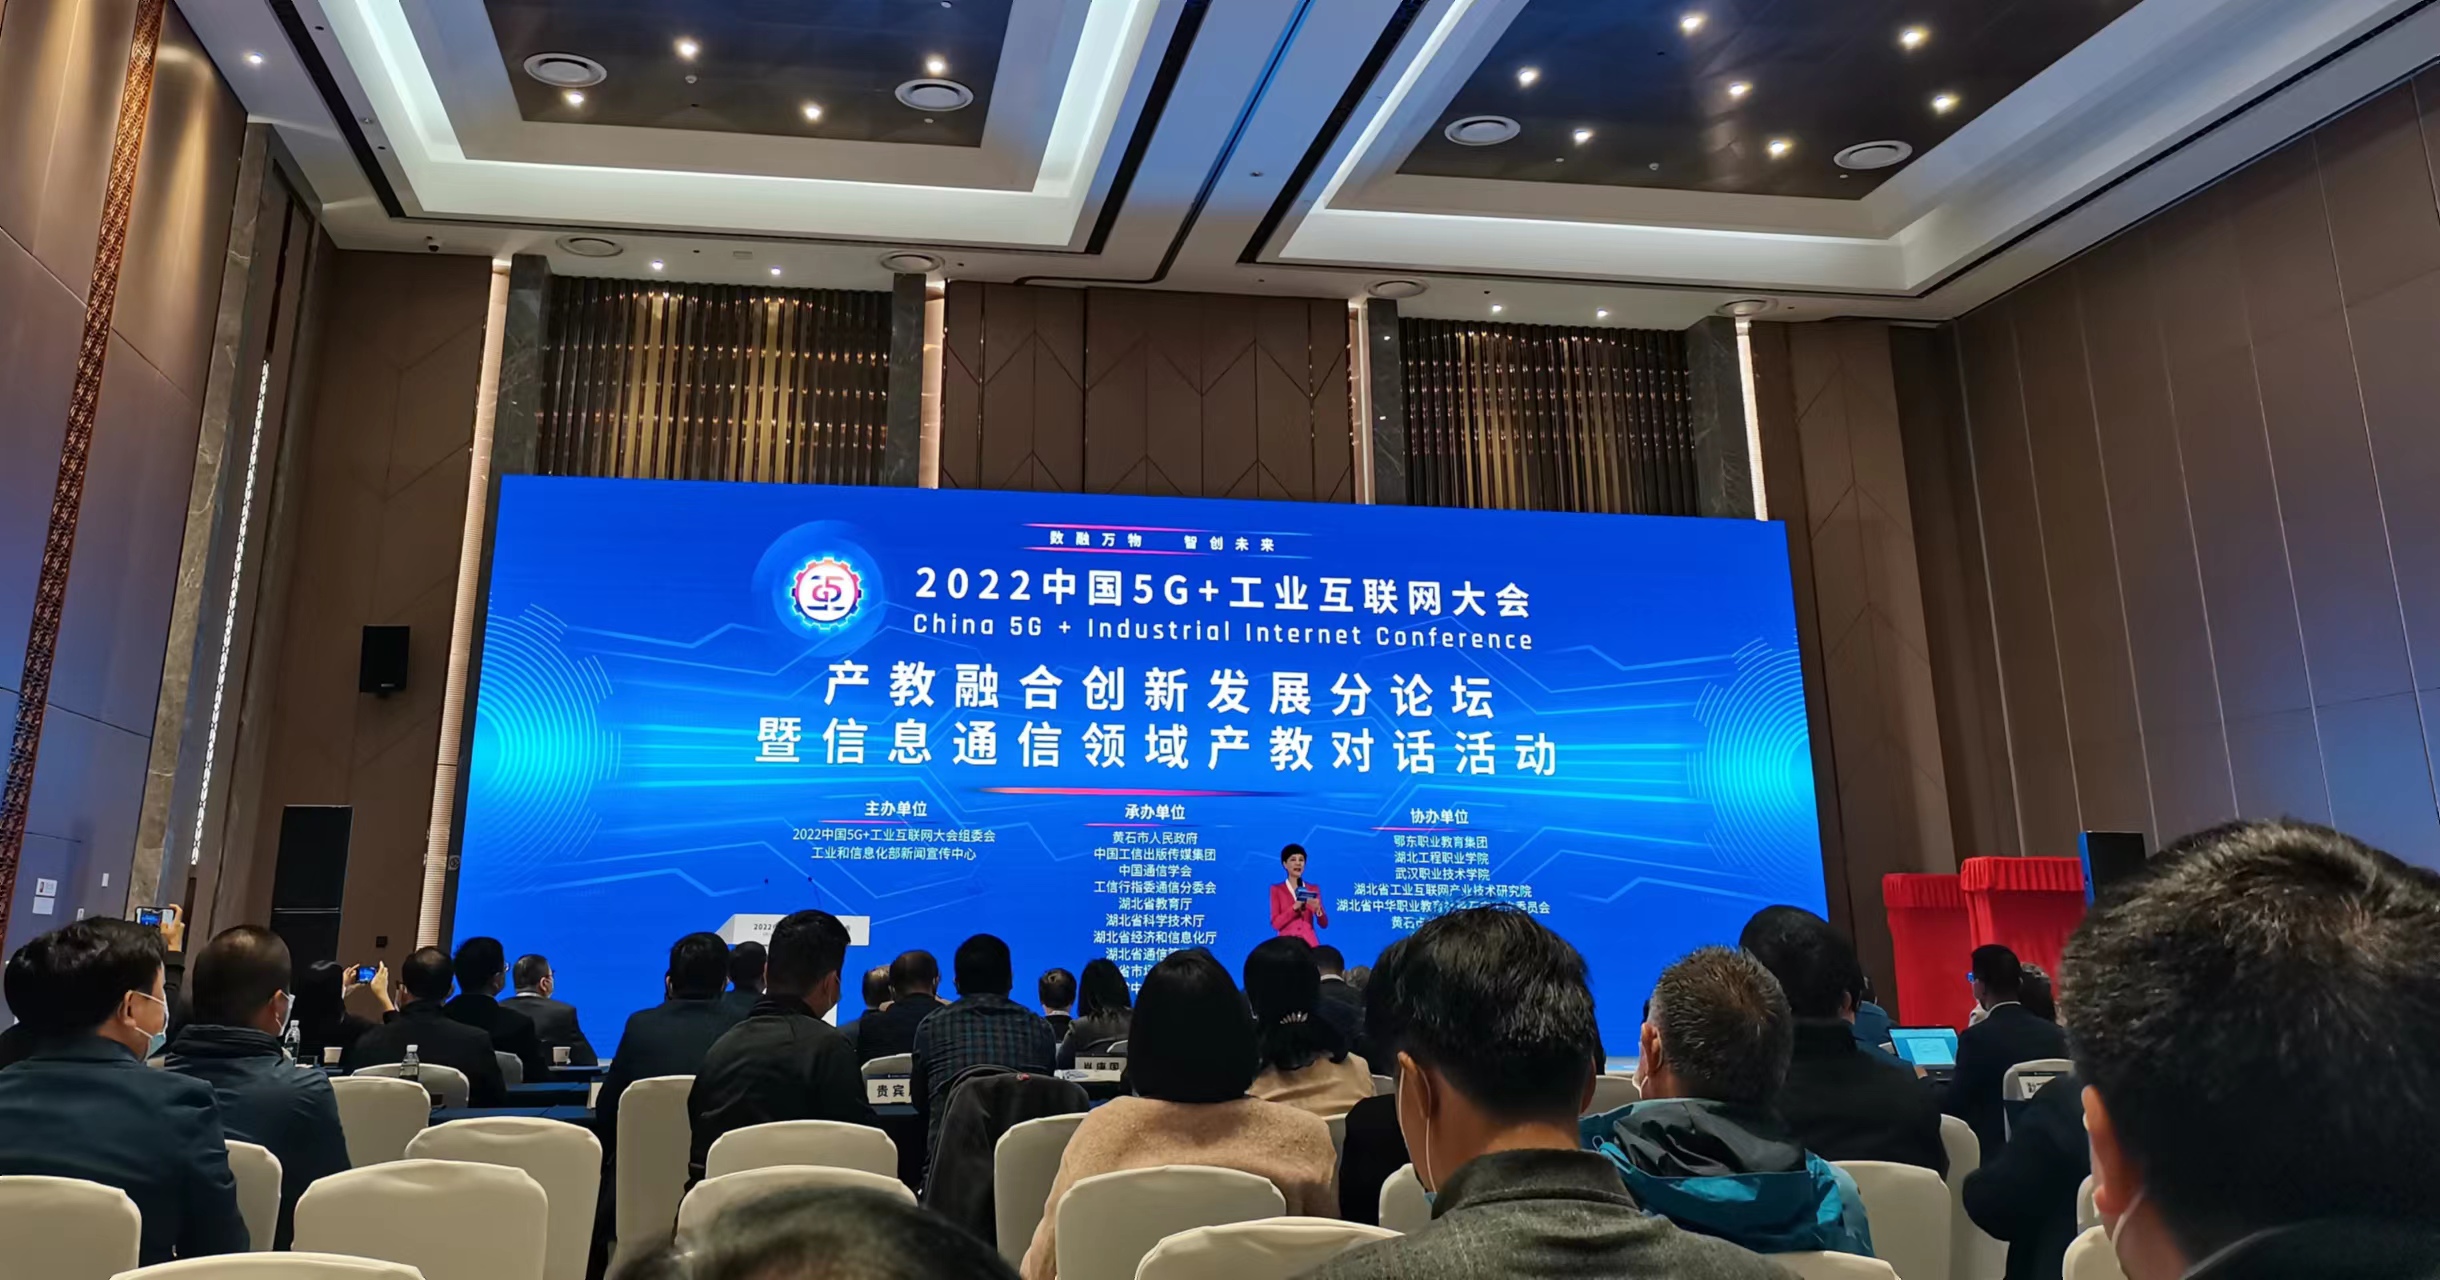 学会应邀参加2022中国5G+工业互联网大会“产教融合新发展分论坛暨信息通信领域产教对话活动